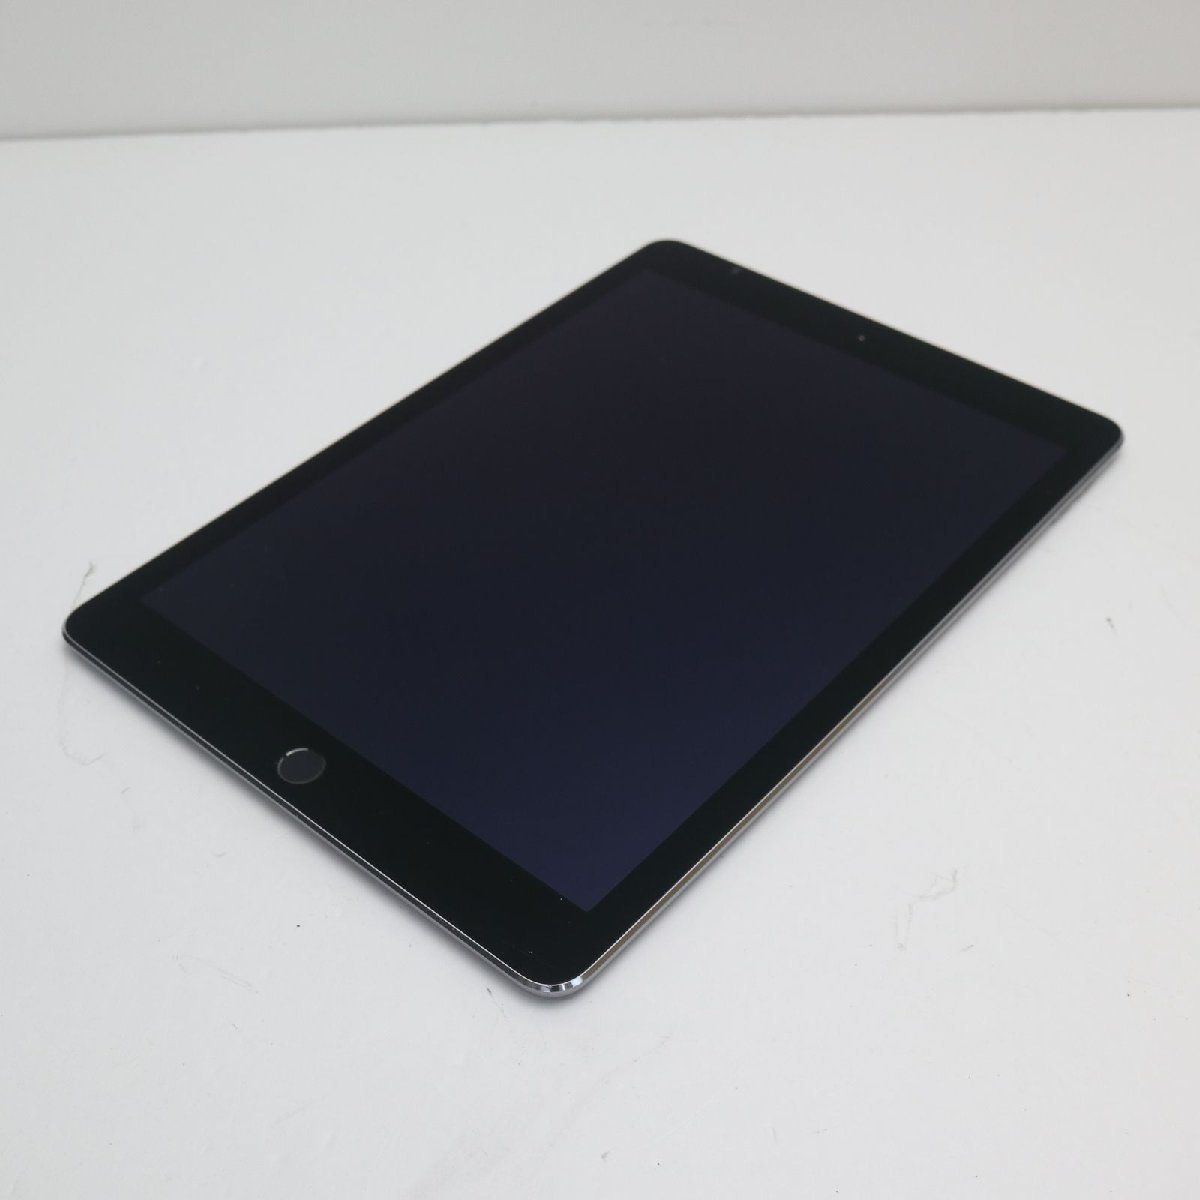 優れた品質 Air iPad 2 スペースグレイ 完動品 32G Wi-Fi タブレット 